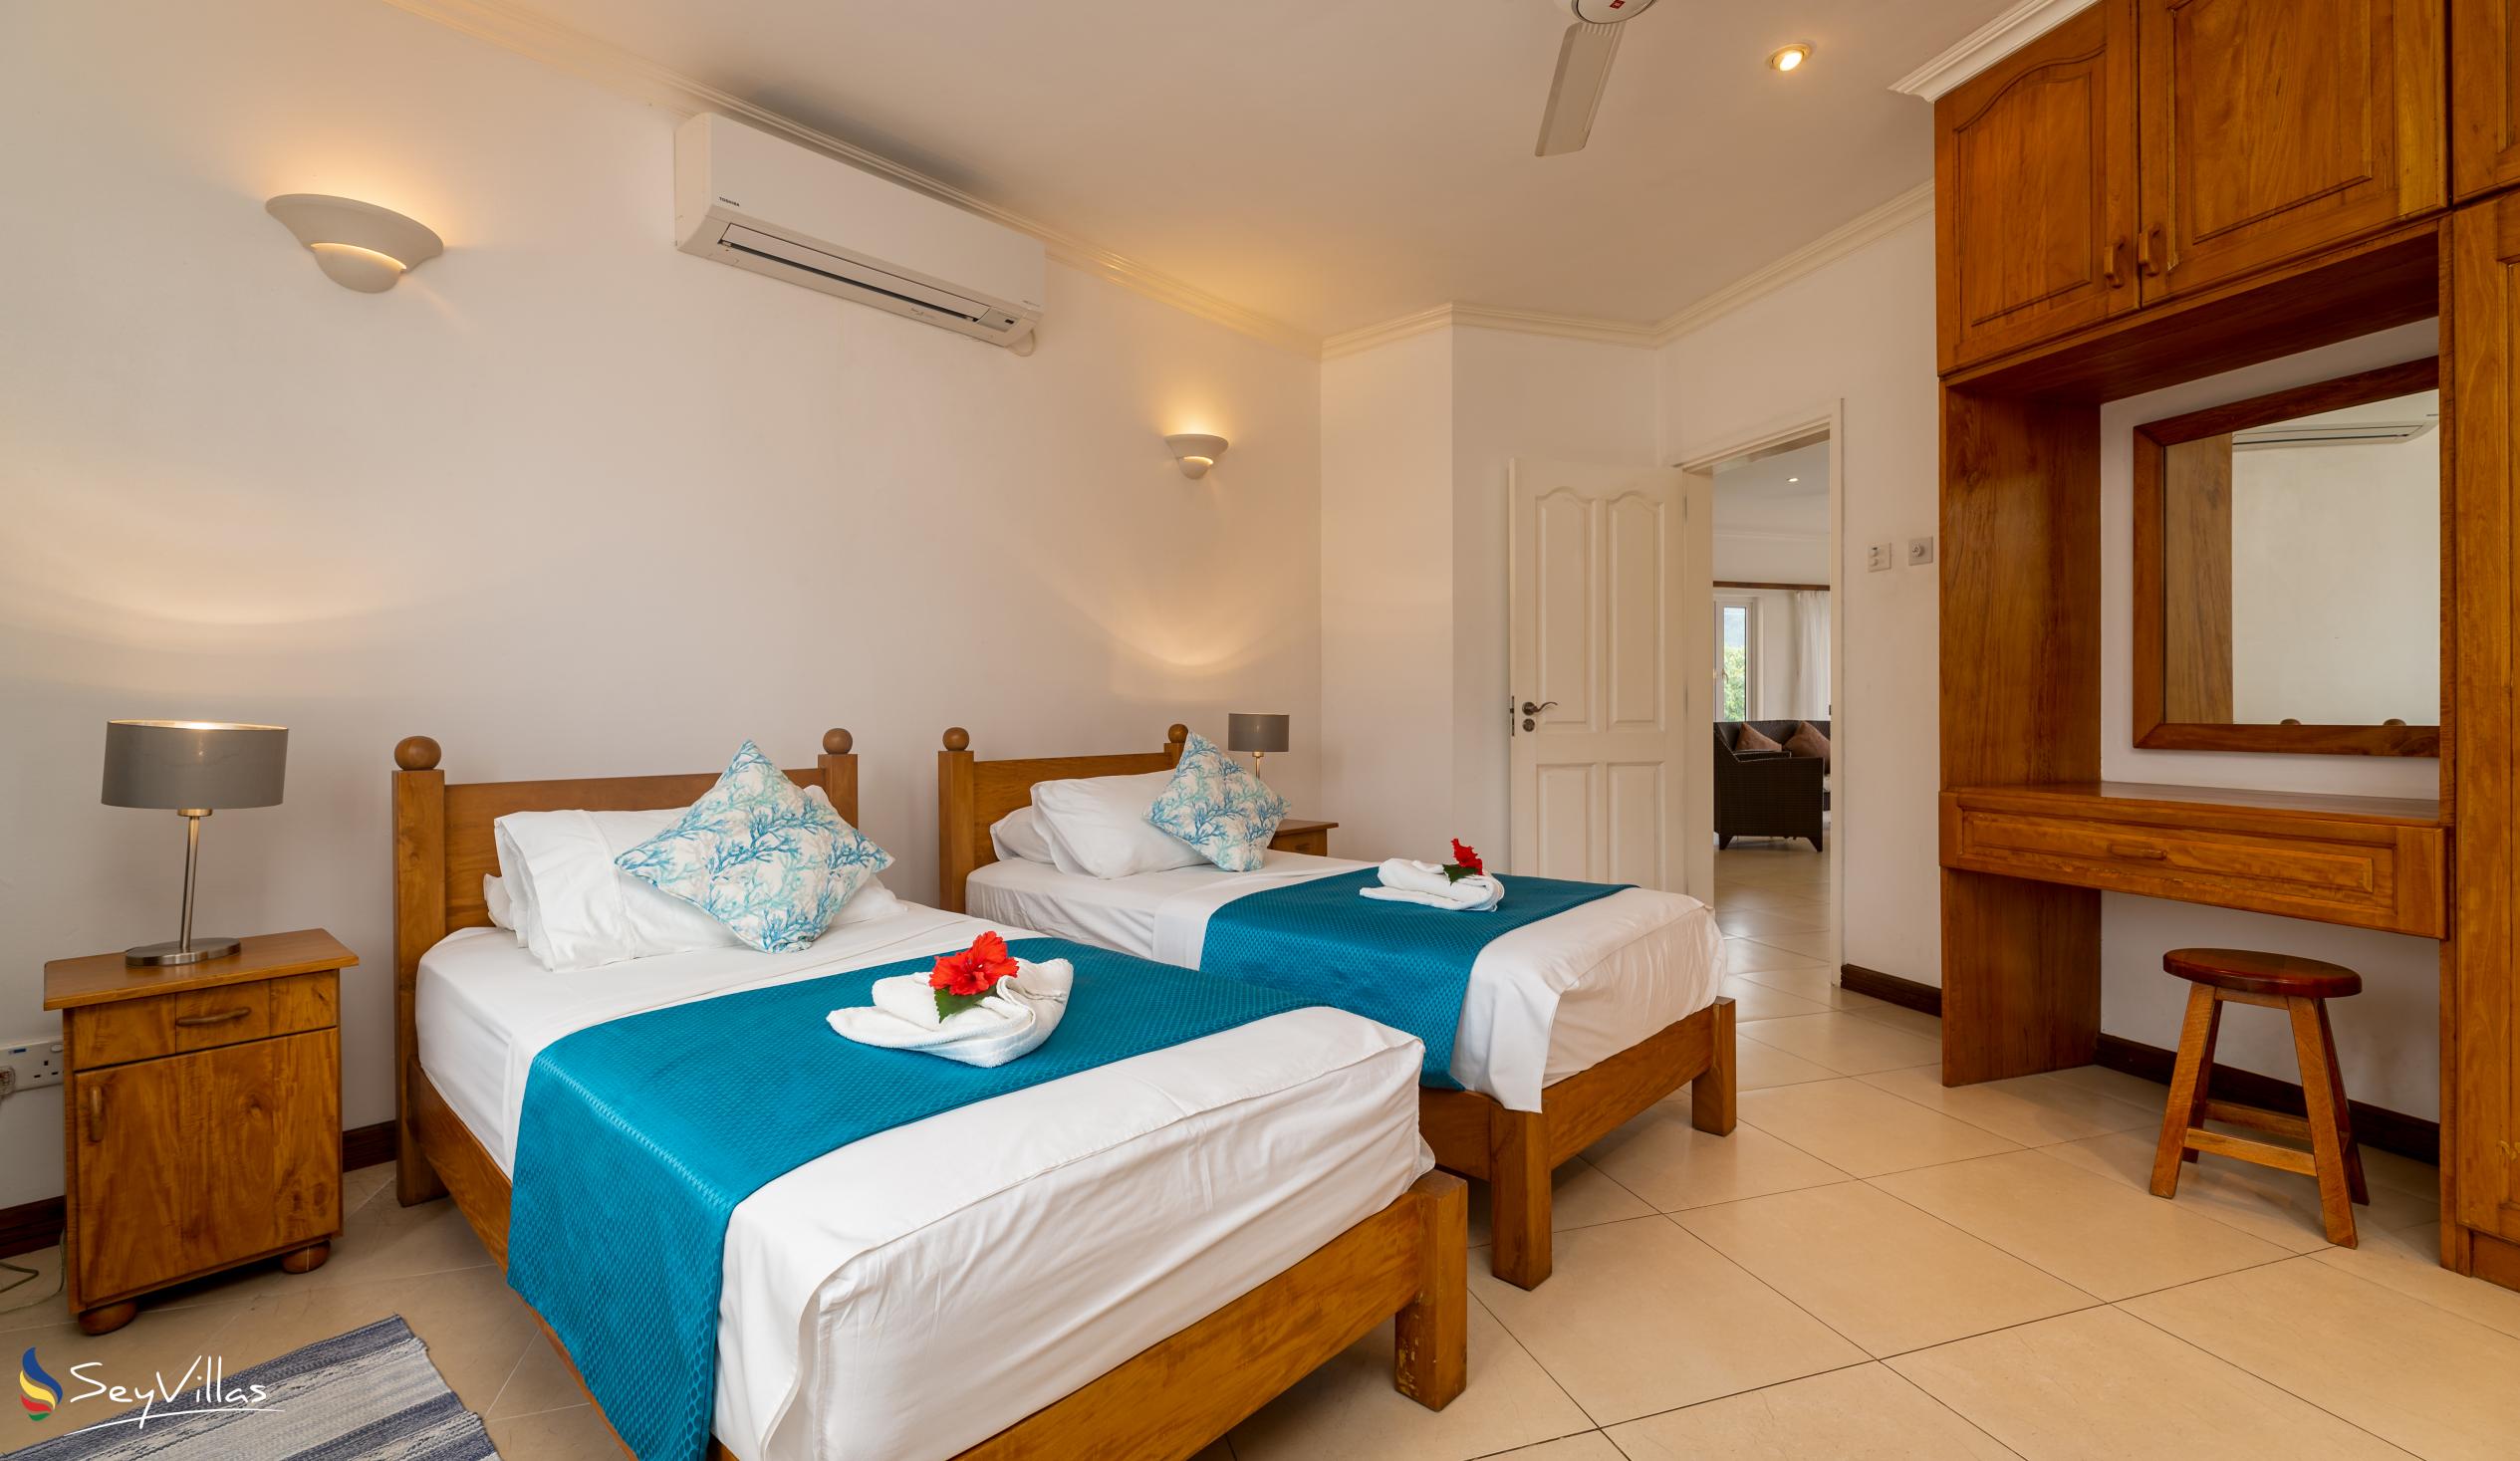 Photo 124: Marie-Laure Suites - 2-Bedroom Apartment - Mahé (Seychelles)